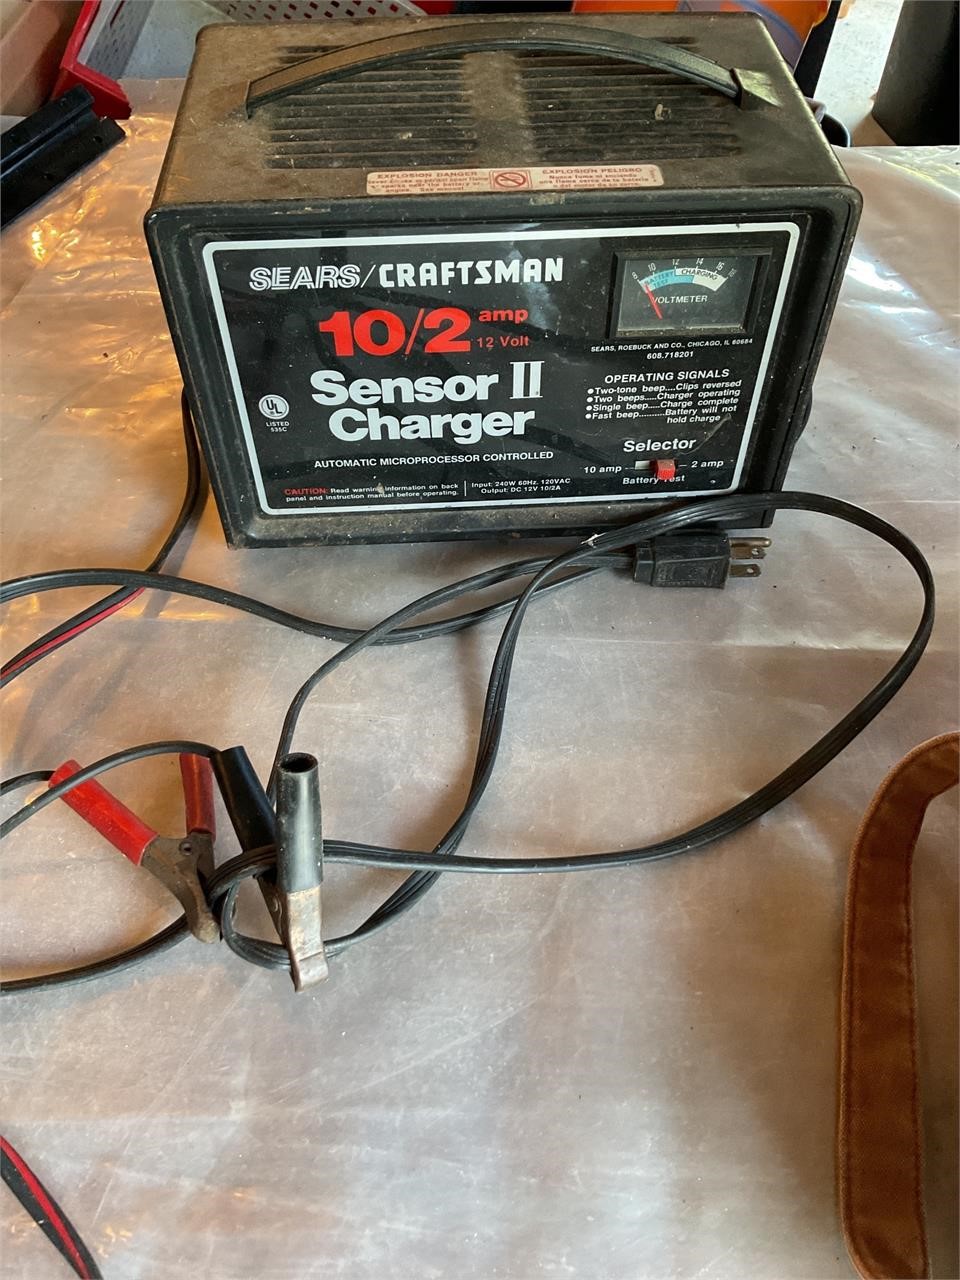 Craftsman sensor 2 charger